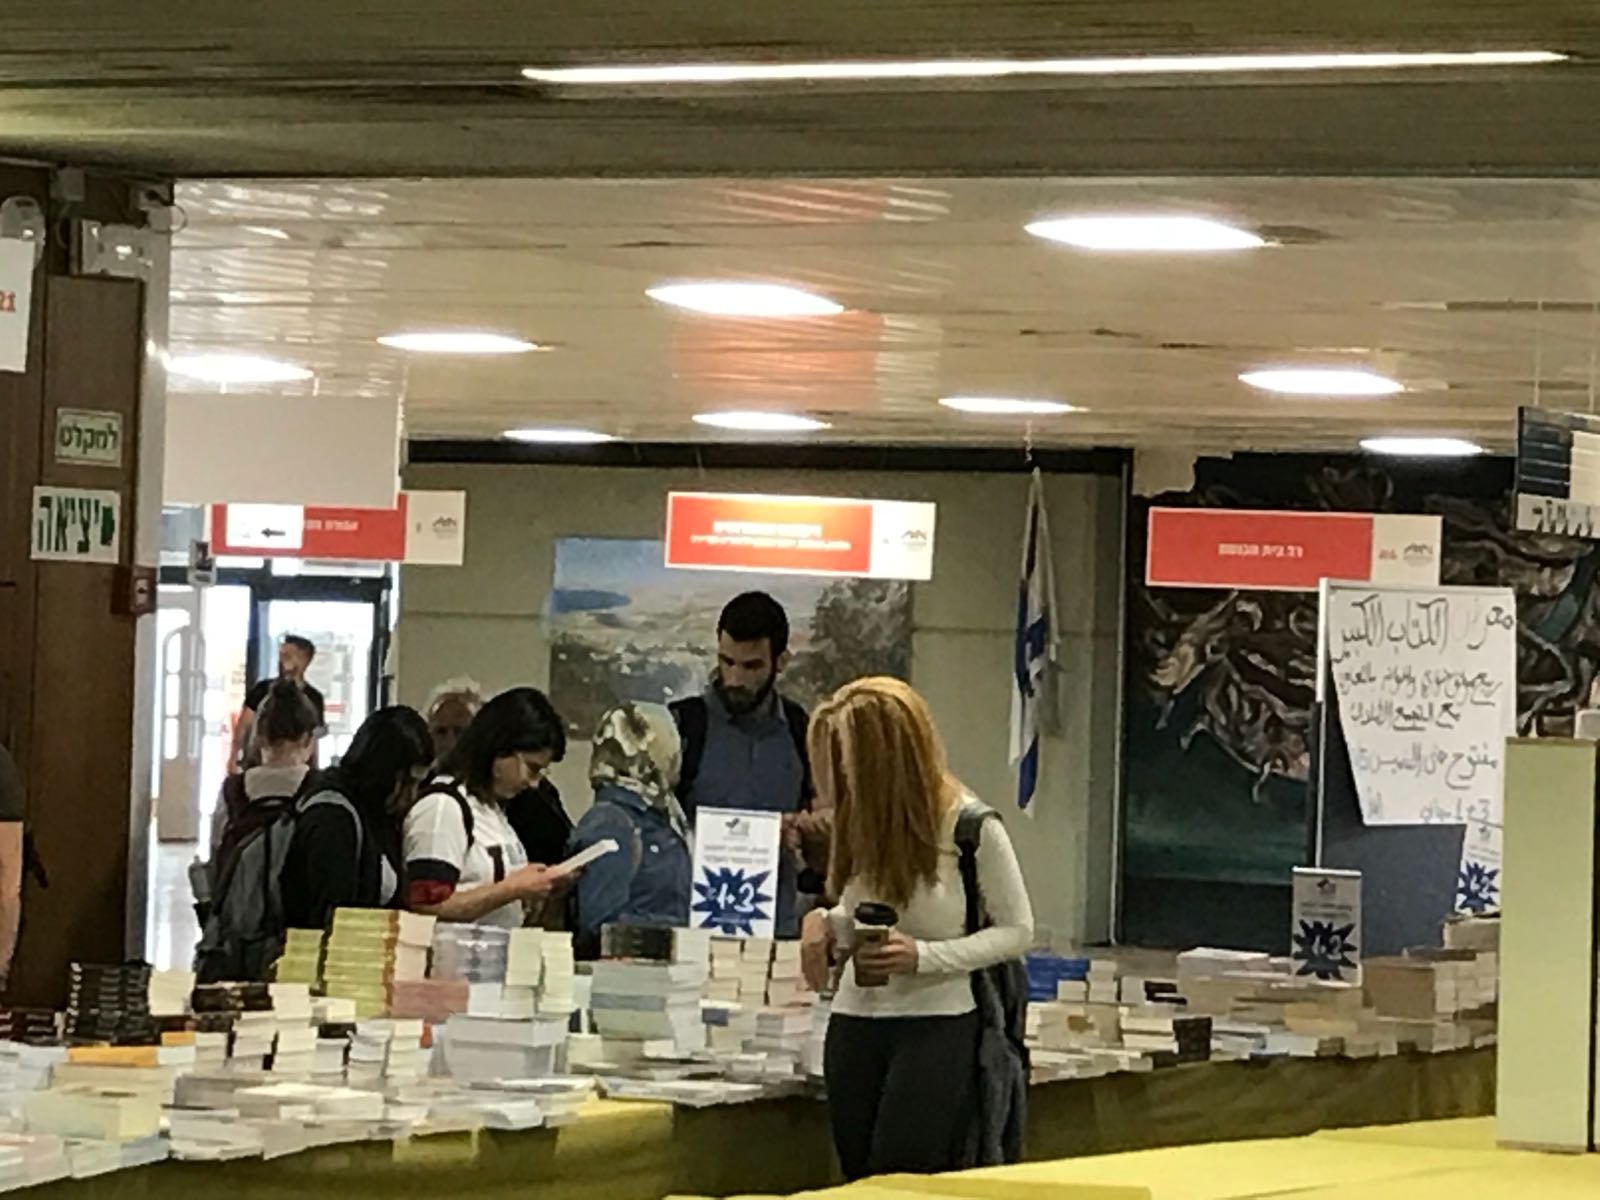 النجاح الكبير والضخم لمعرض الكتاب المقام في جامعة حيفا - والمستمر حتى 10.05.2018-7